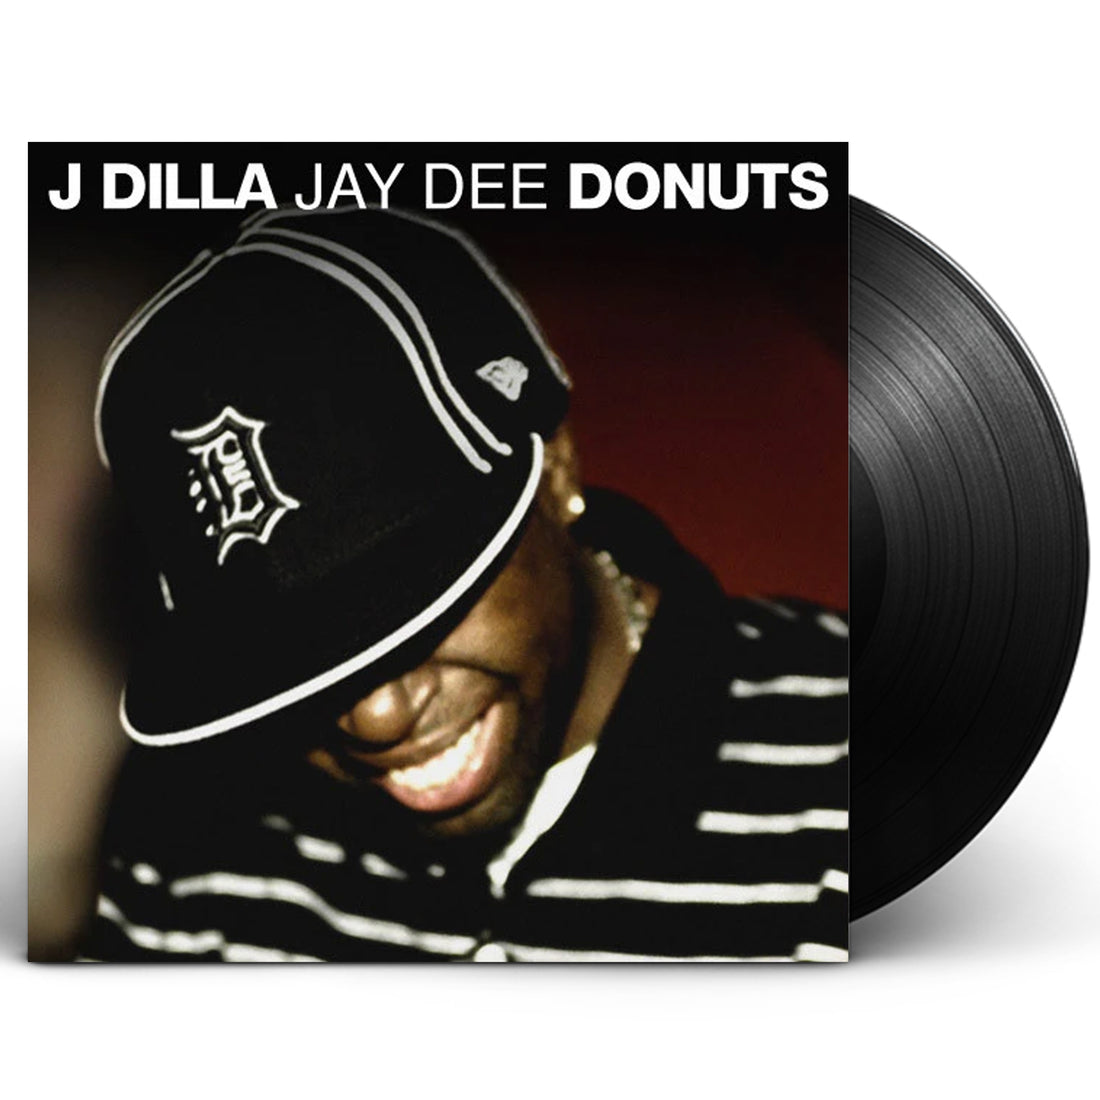 J DILLA "DONUTS" 2XLP VINYL [SMILE COVER]